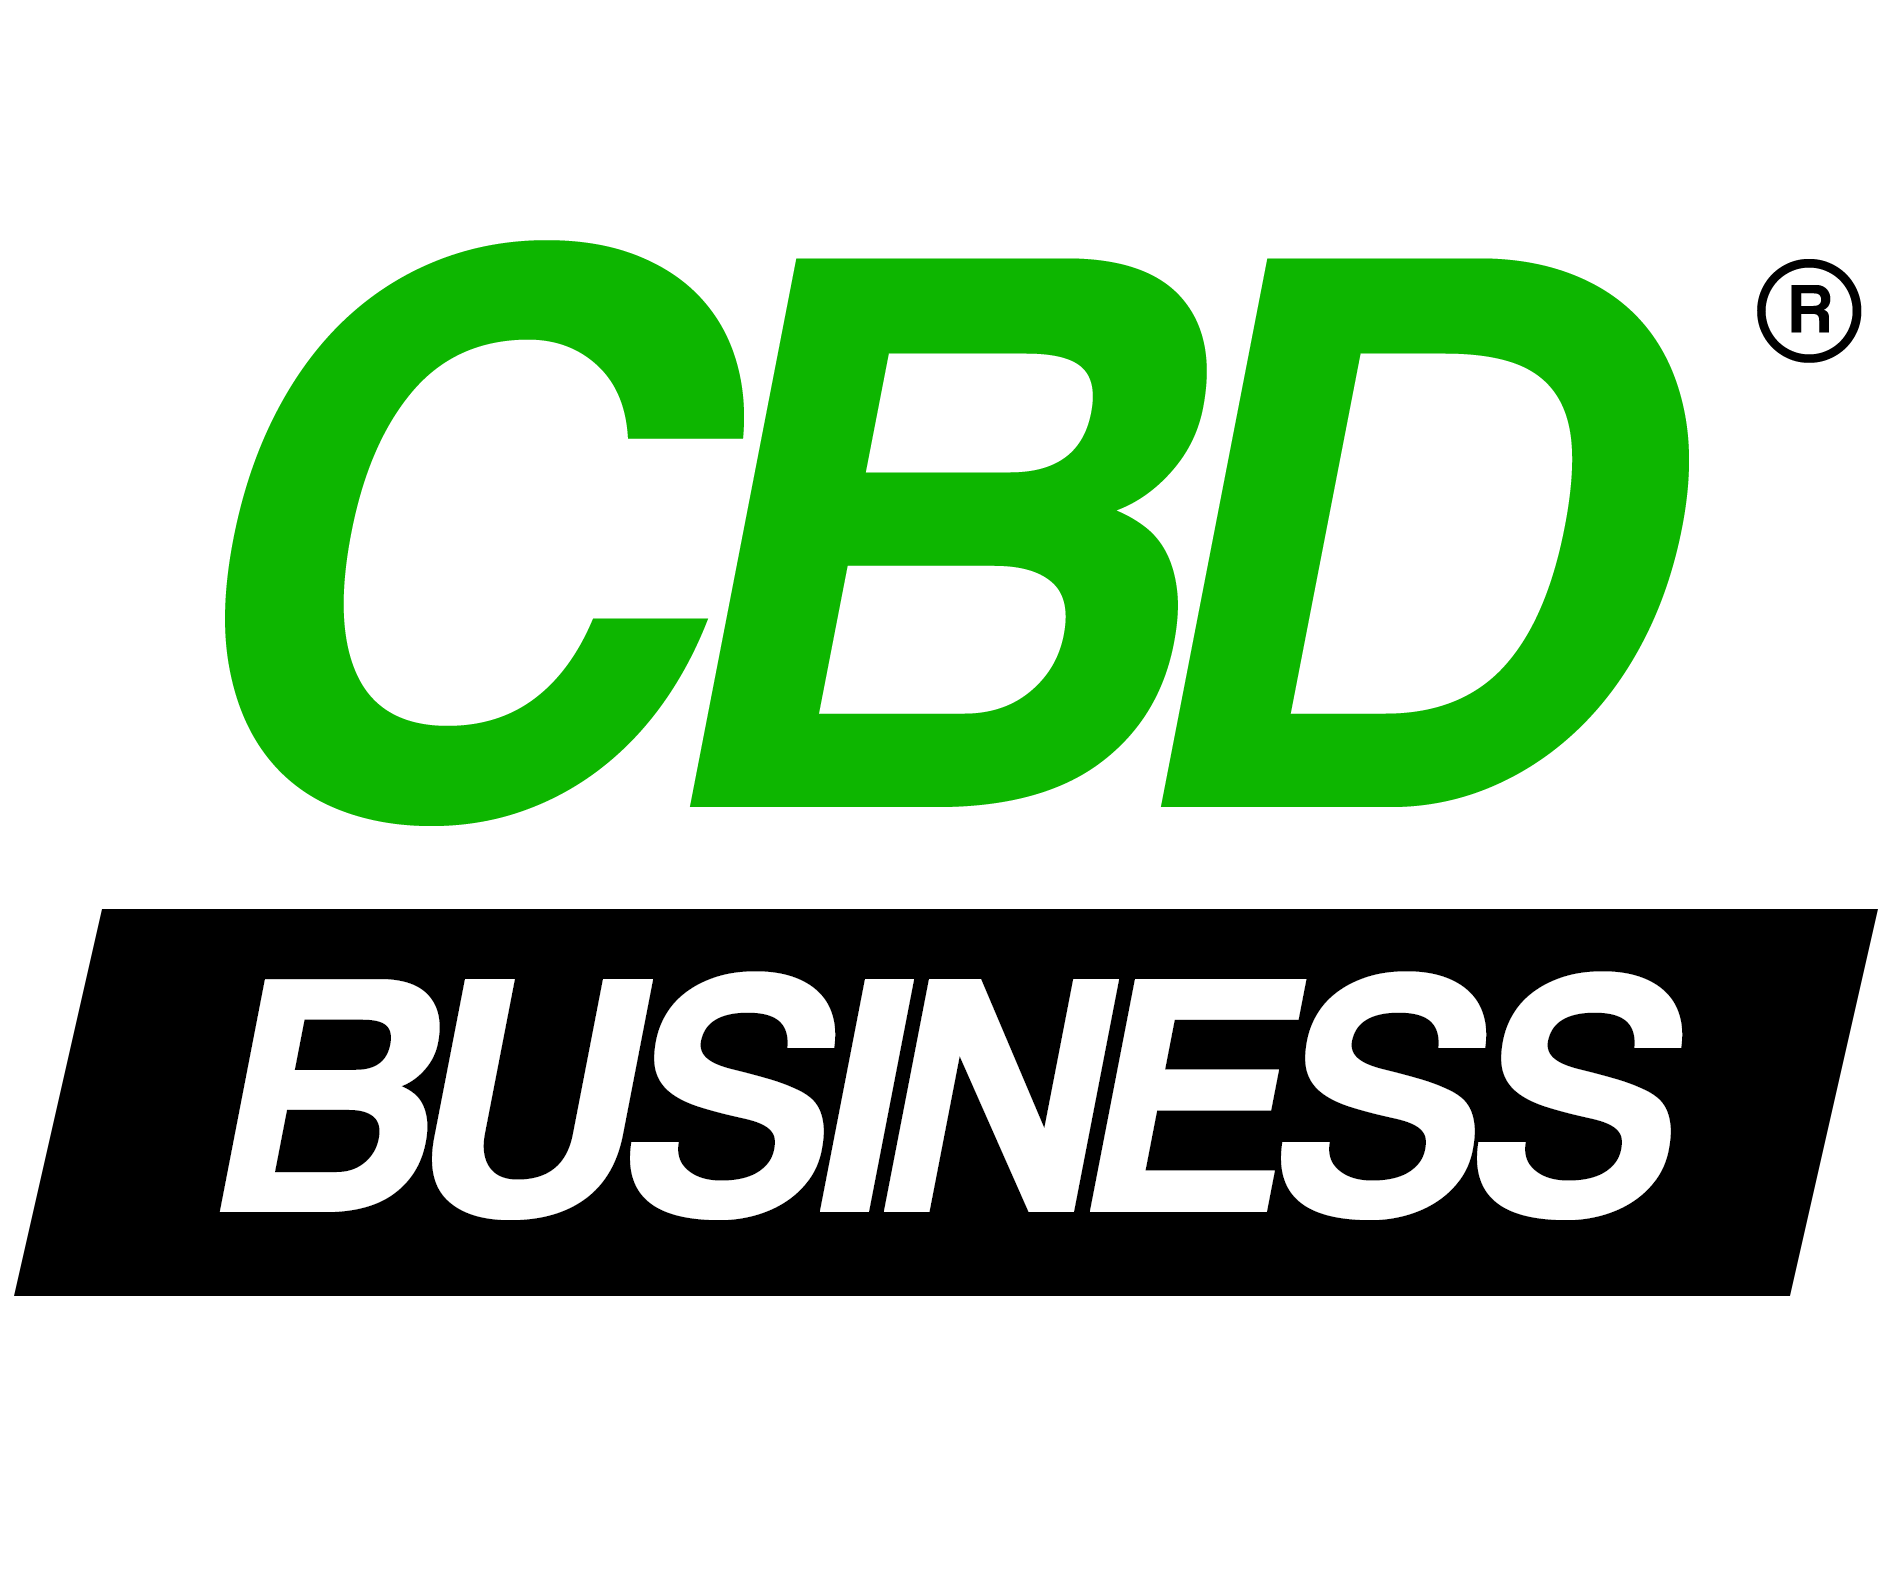 CBD Business - LOGO OFF